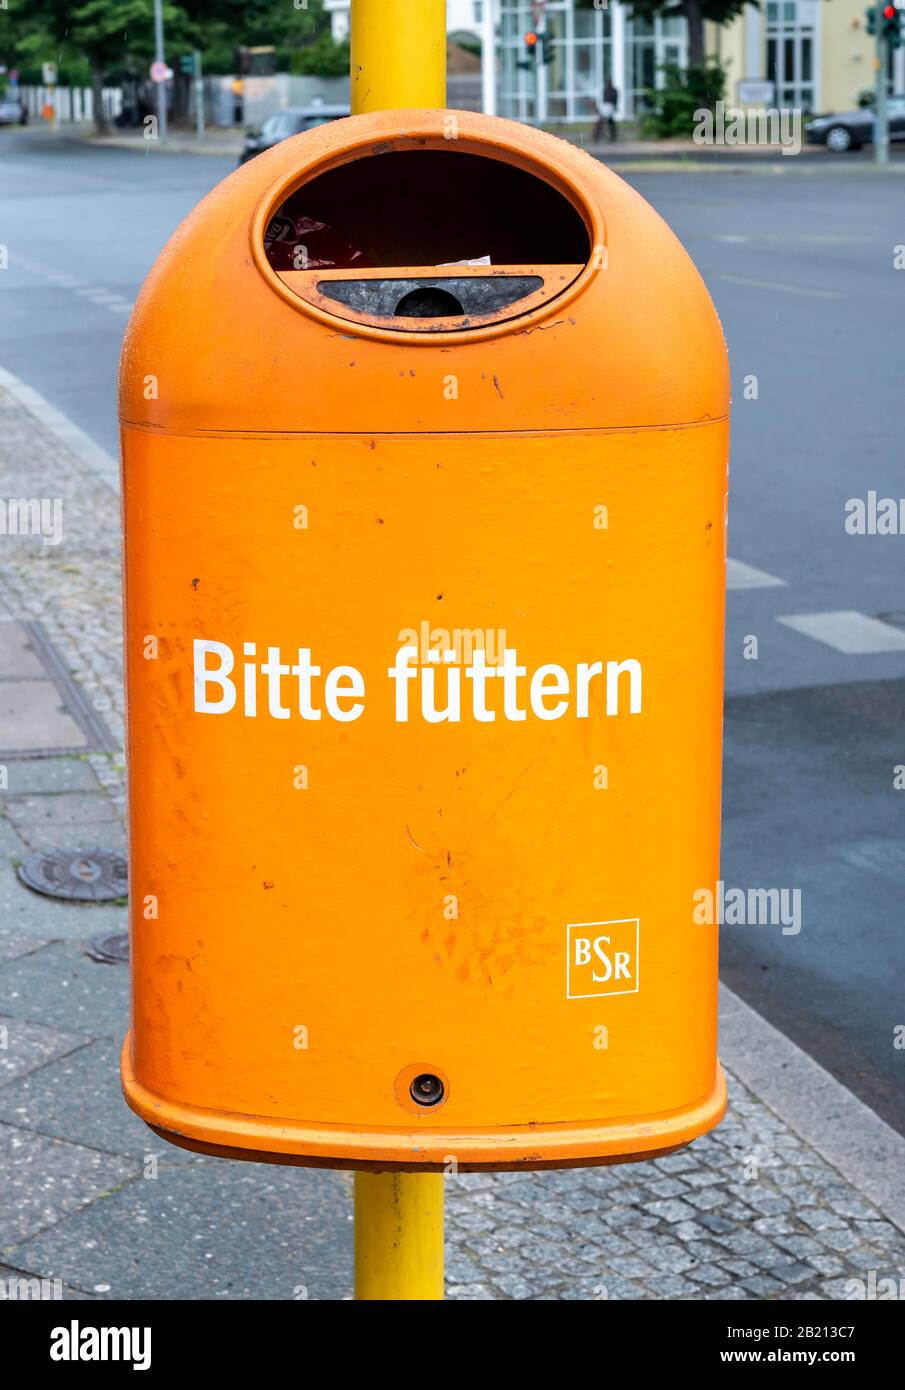 Drôle de poubelle orange avec l'inscription Bitte fuetern, Berlin, Allemagne Banque D'Images